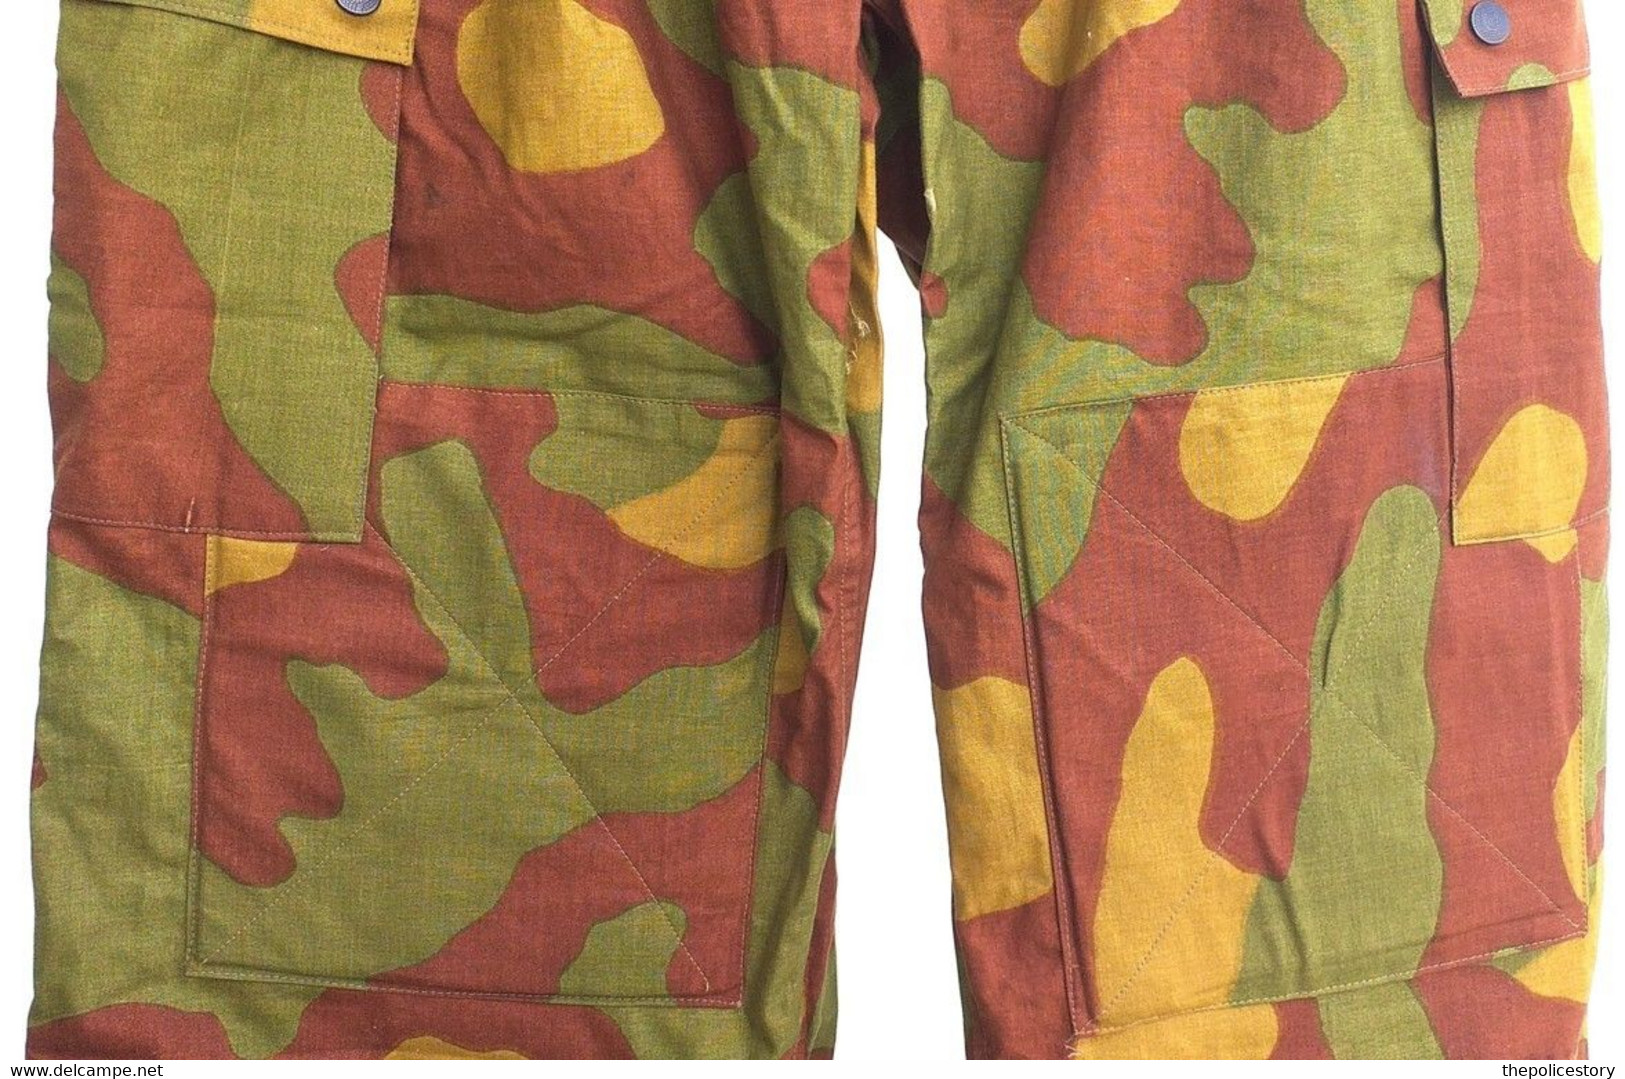 Giacca pantaloni mimetica M29 Capitano CC del 1962 ottima completa